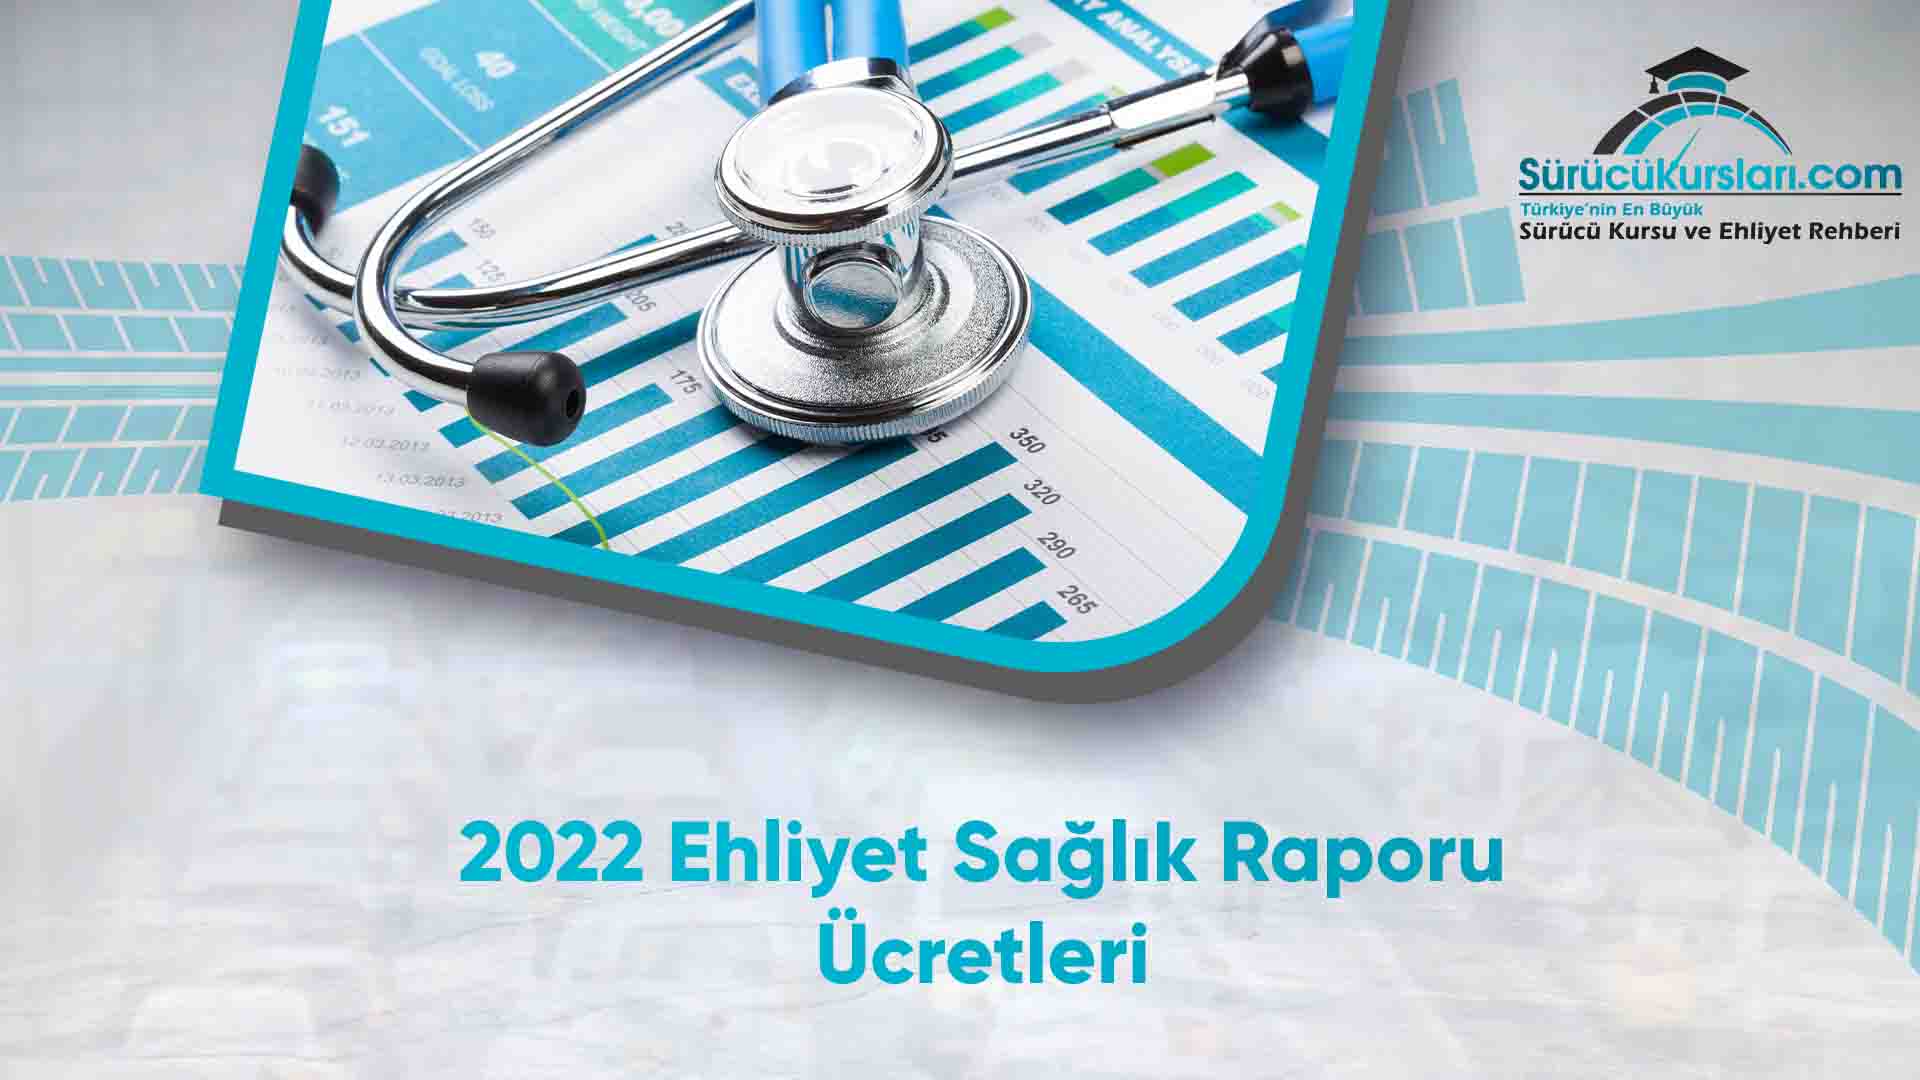 2022 Ehliyet Sağlık Raporu Ücretleri